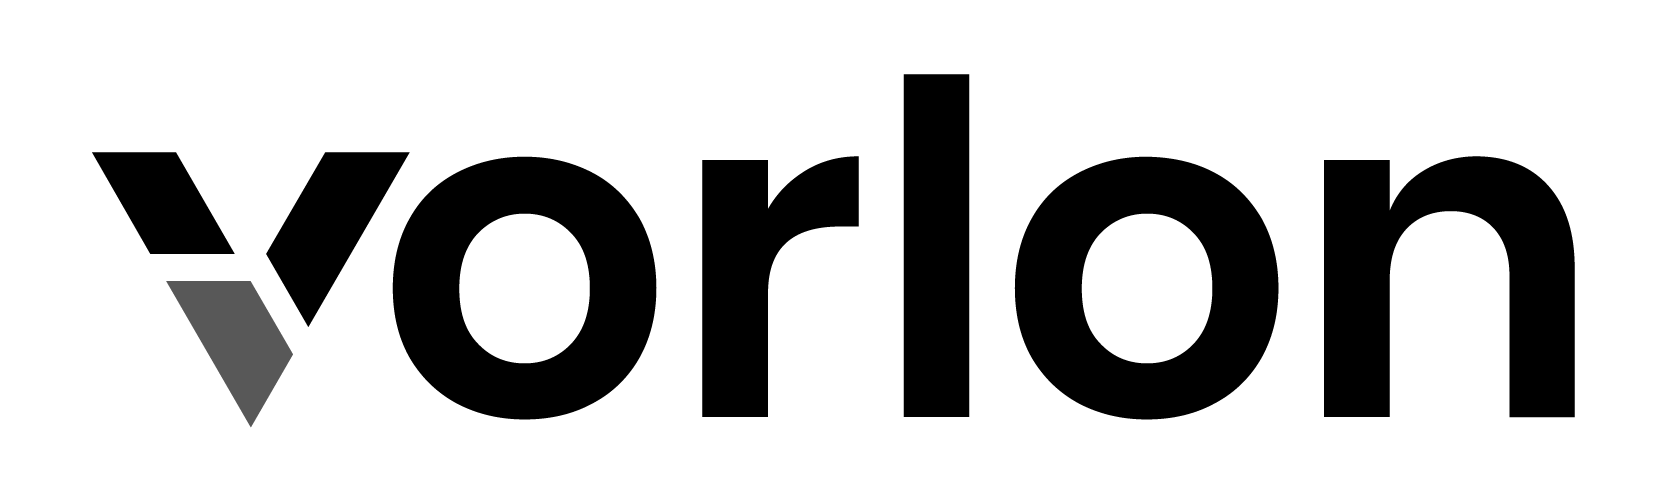 Vorlon logo_Black (PNG)